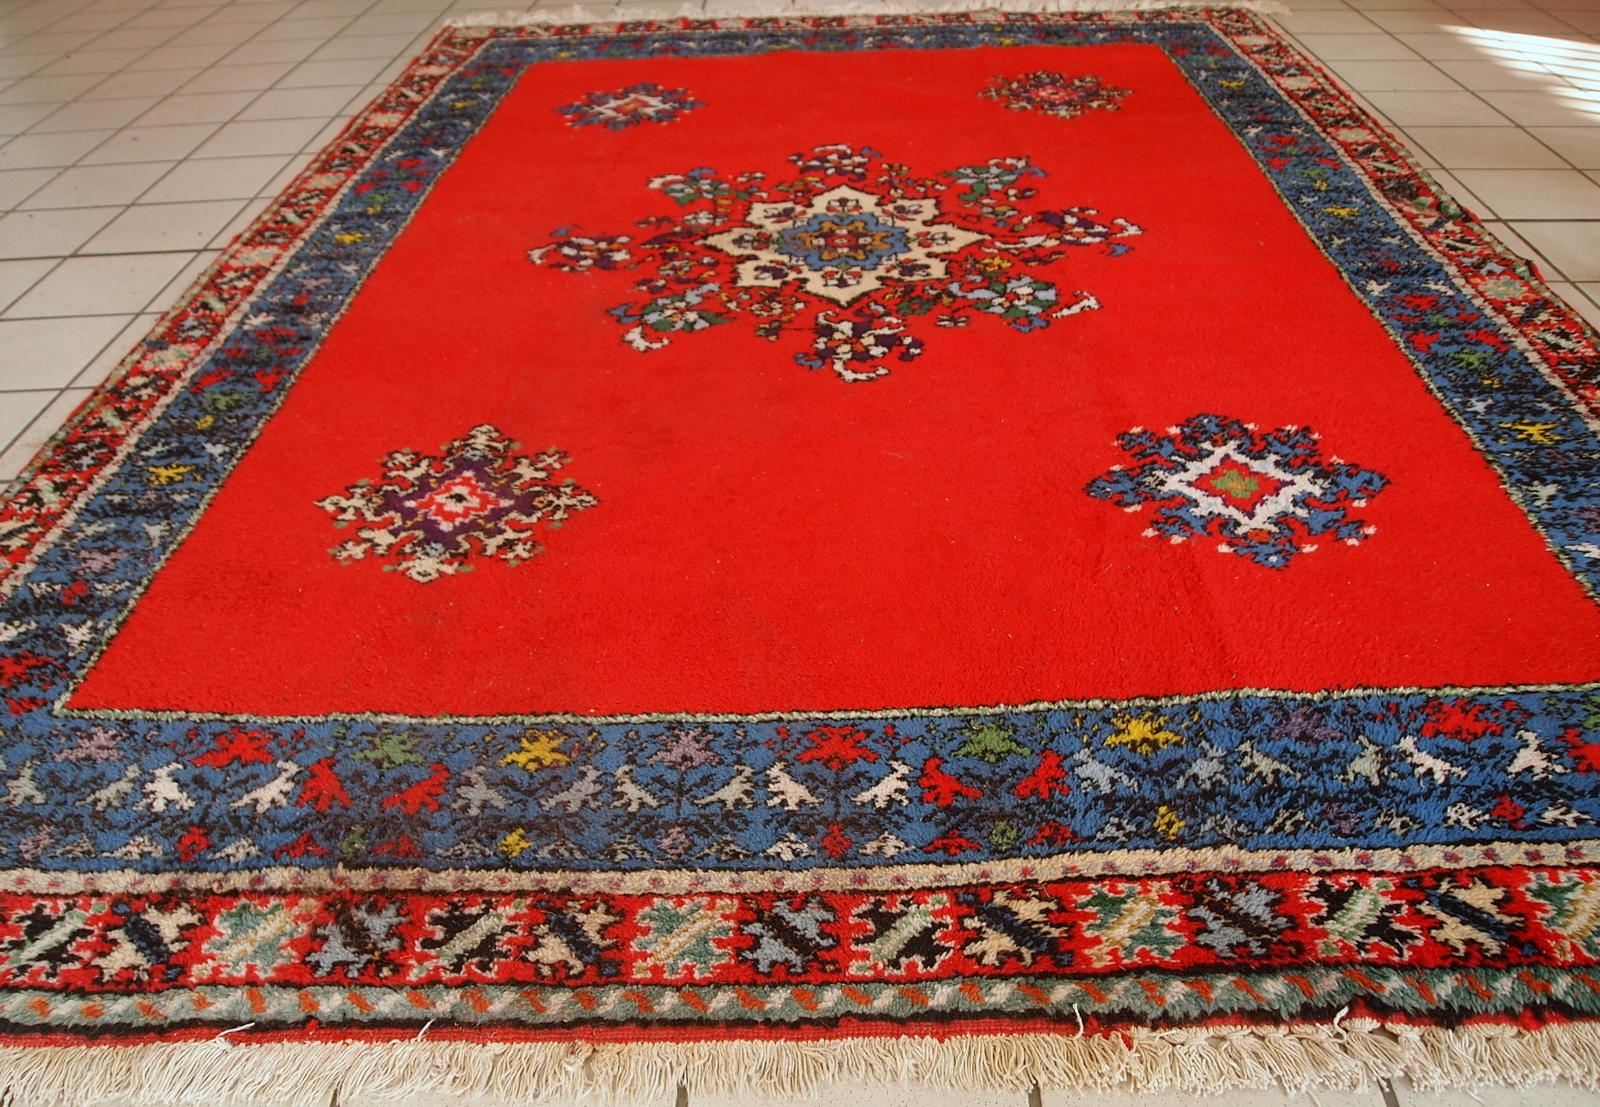 Tapis vintage fait à la main par des Berbères du Maroc, en laine rouge vif. Le tapis est de la fin du 20ème siècle en bon état d'origine.

-État : original bon,

-vers les années 1970,

-Taille : 5,6' x 7,9' (170cm x 240cm),

-Matériau :